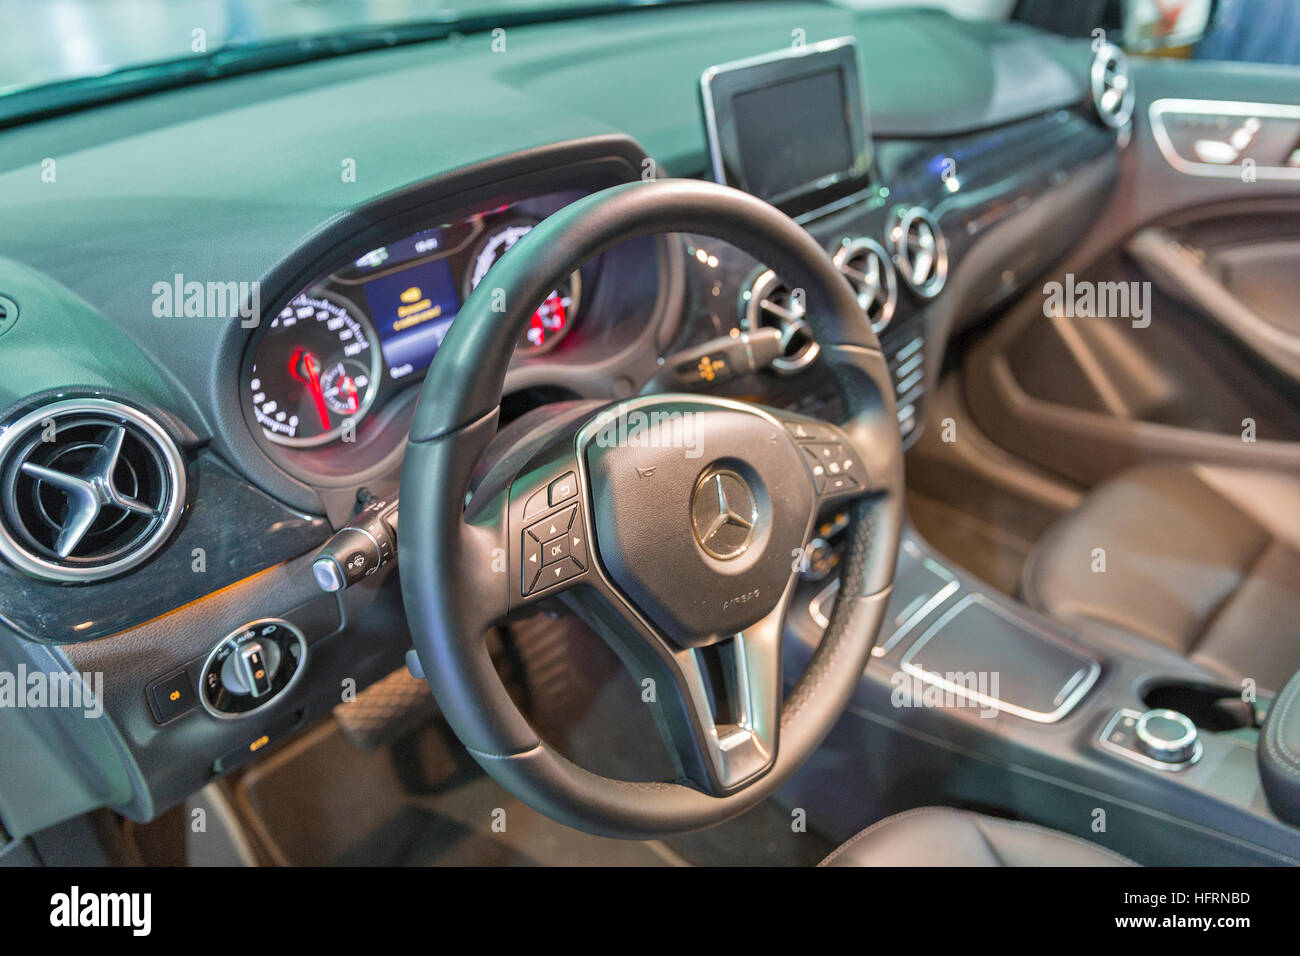 Mercedes Benz B Class Electric Drive Car Interior Closeup At